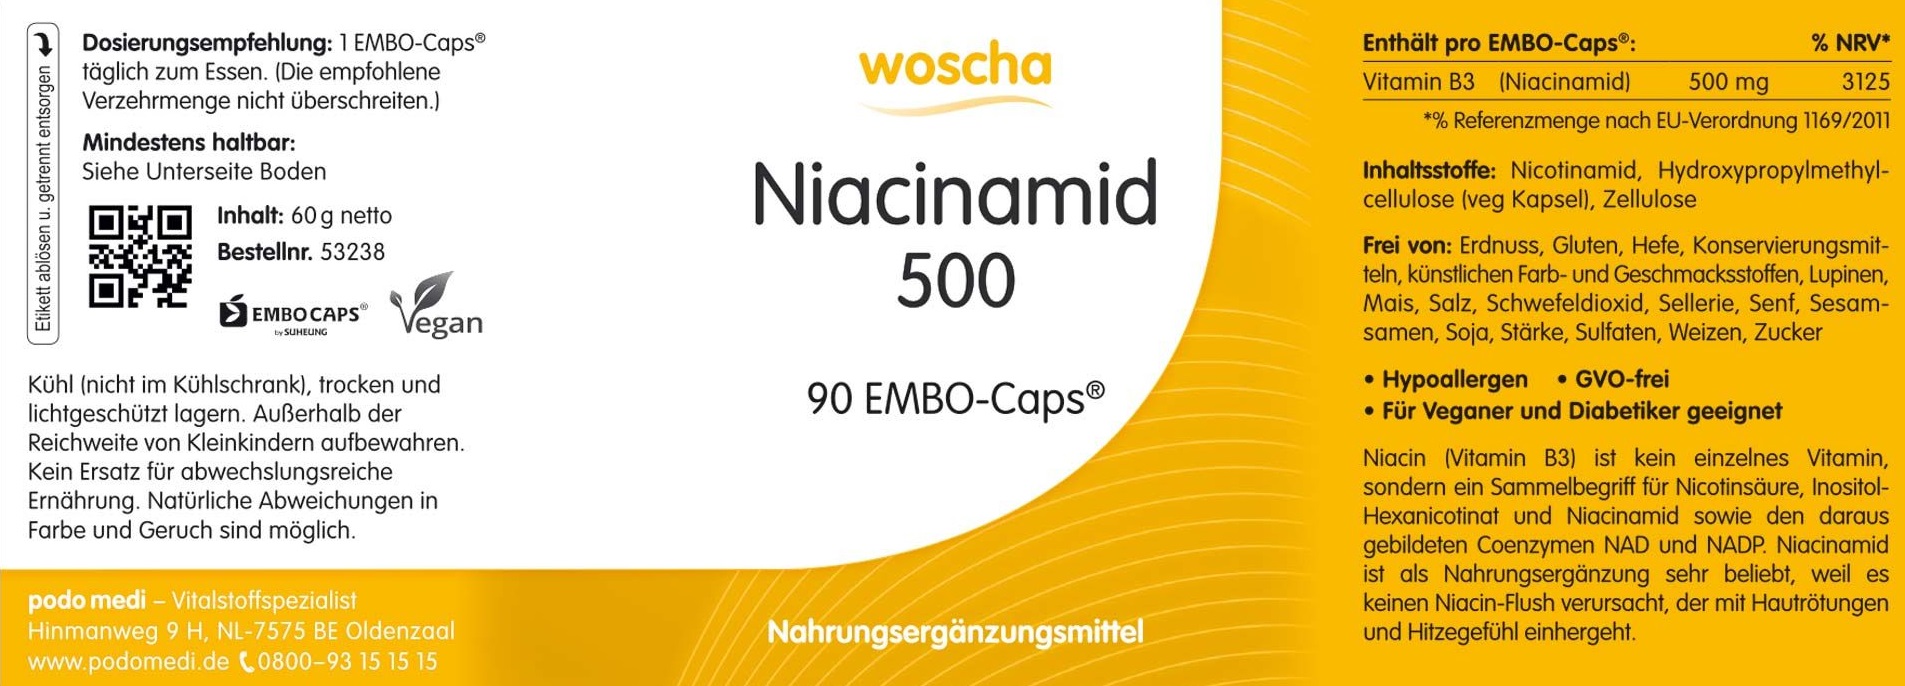 Woscha Niacinamid 500 von podo medi beinhaltet 90 Kapseln Etikett